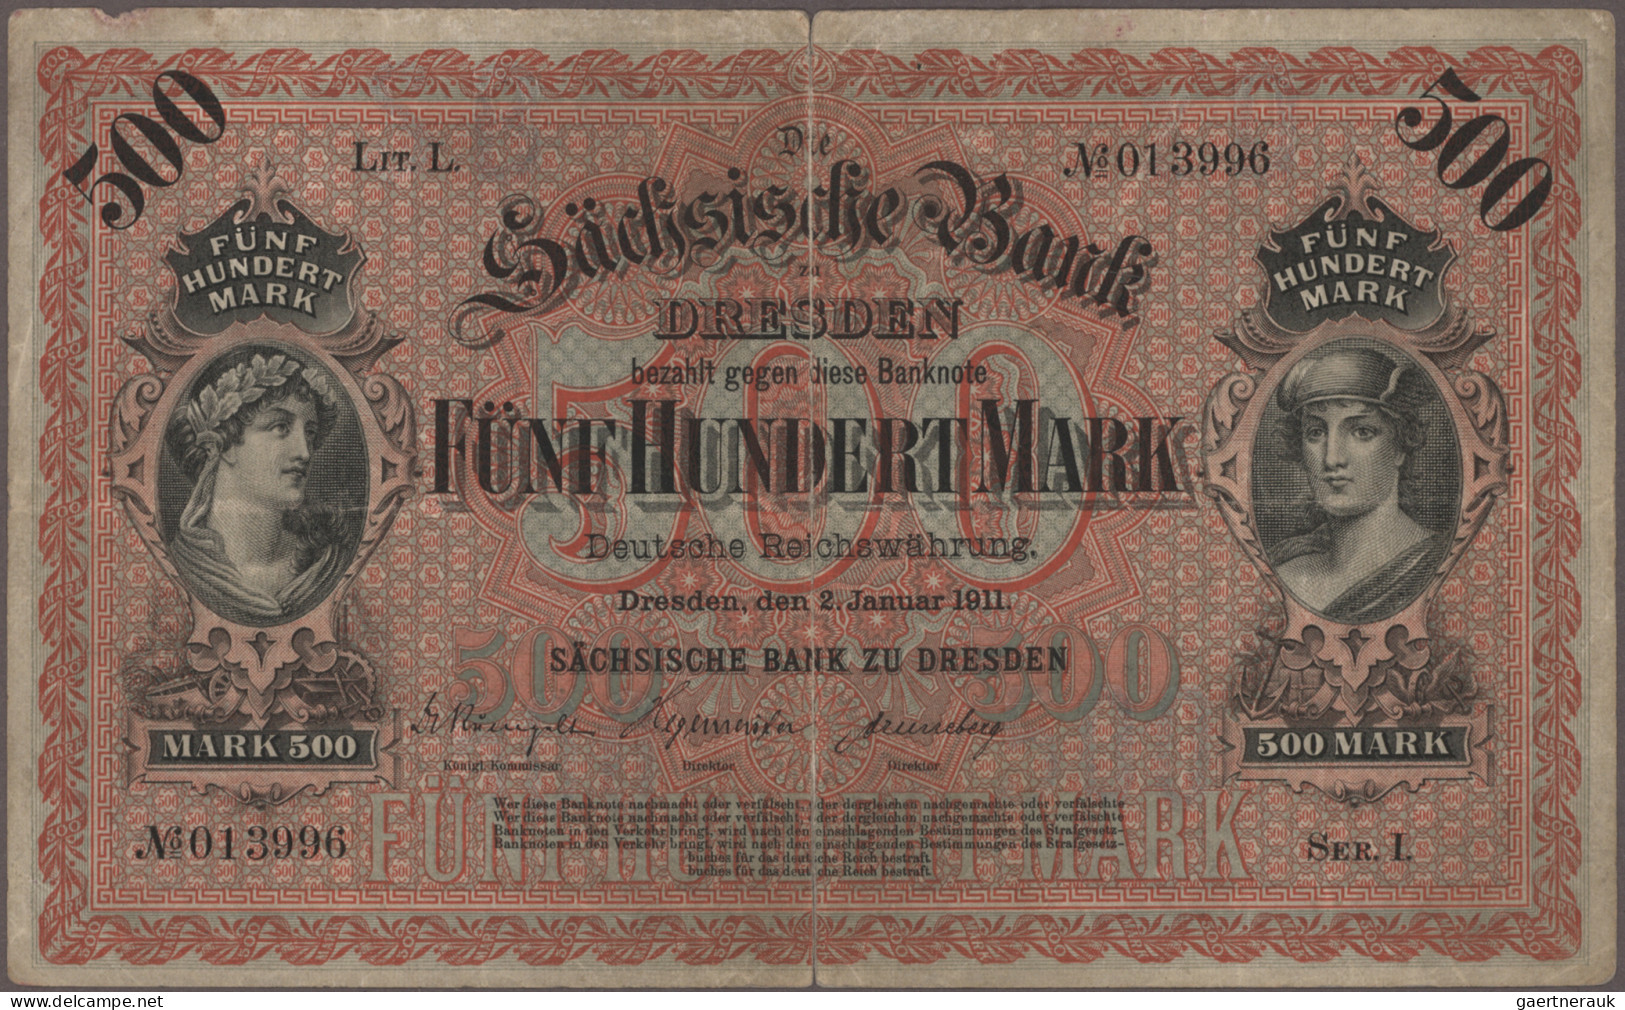 Deutschland - Länderscheine: Großes Konvolut mit 164 Länderbanknoten, Ausgaben 1